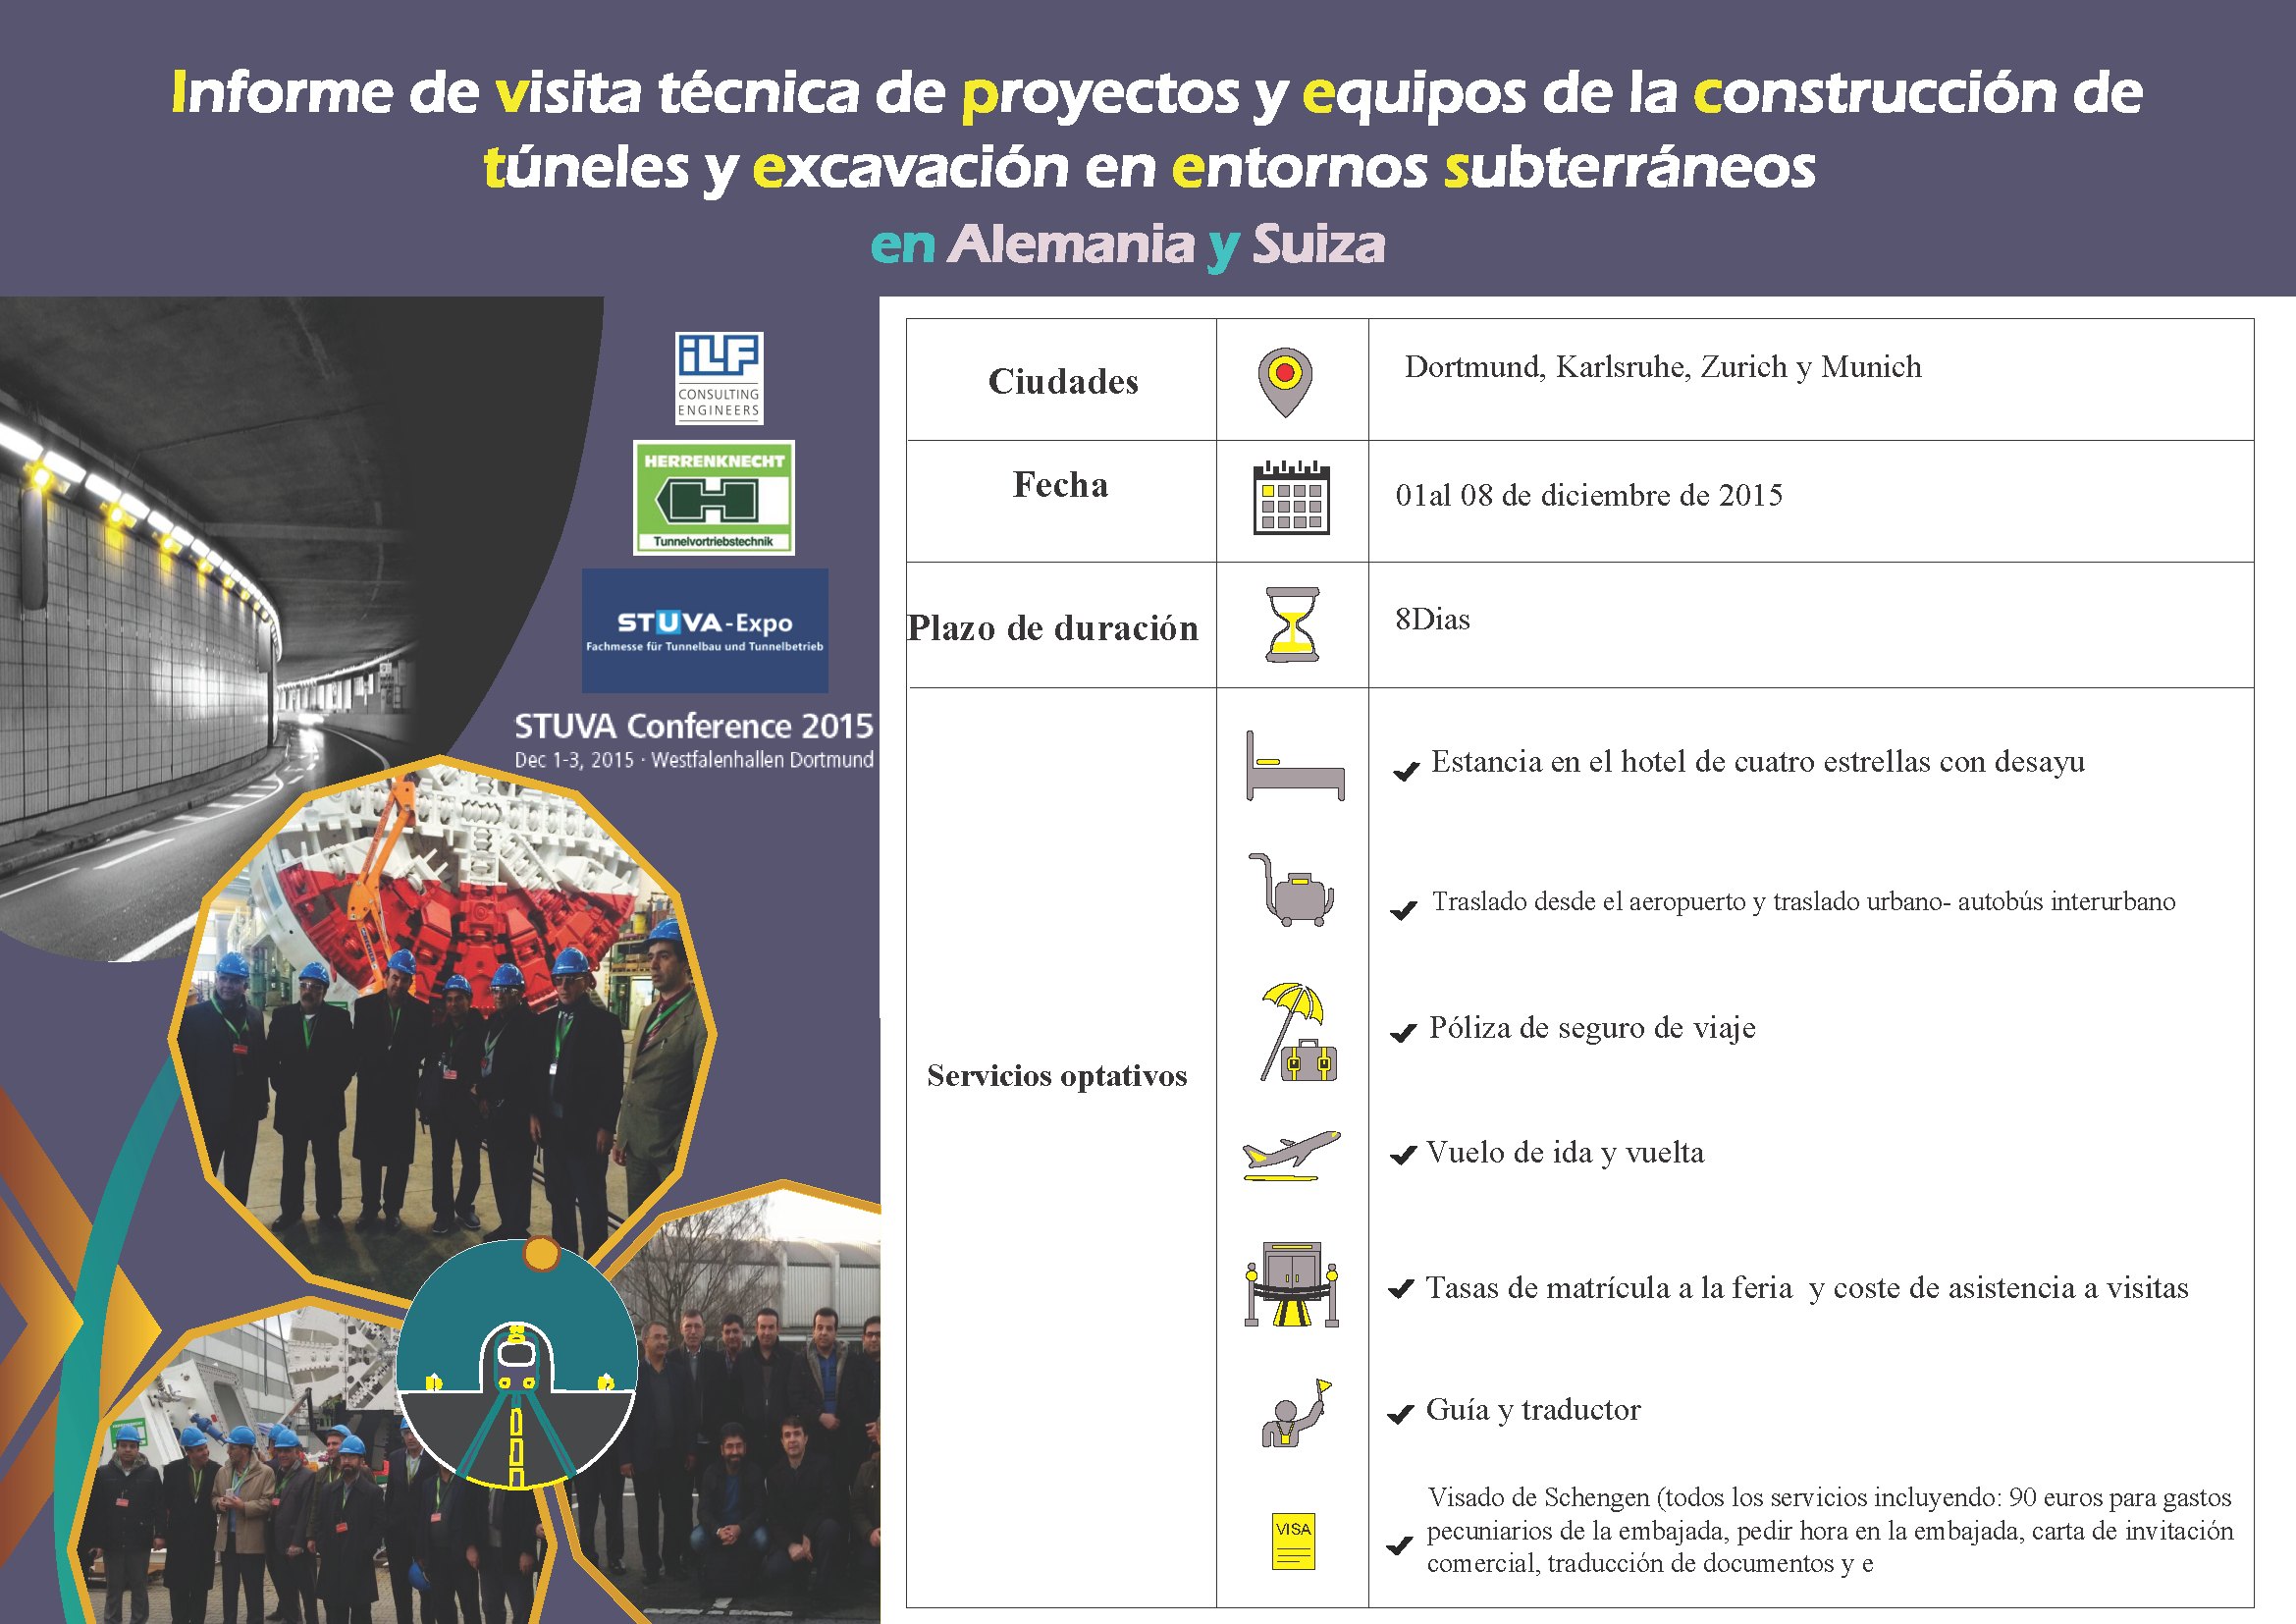 Informe de visita técnica de proyectos y equipos de la construcción de túneles yexcavación en entornos subterráneosDec. 2015